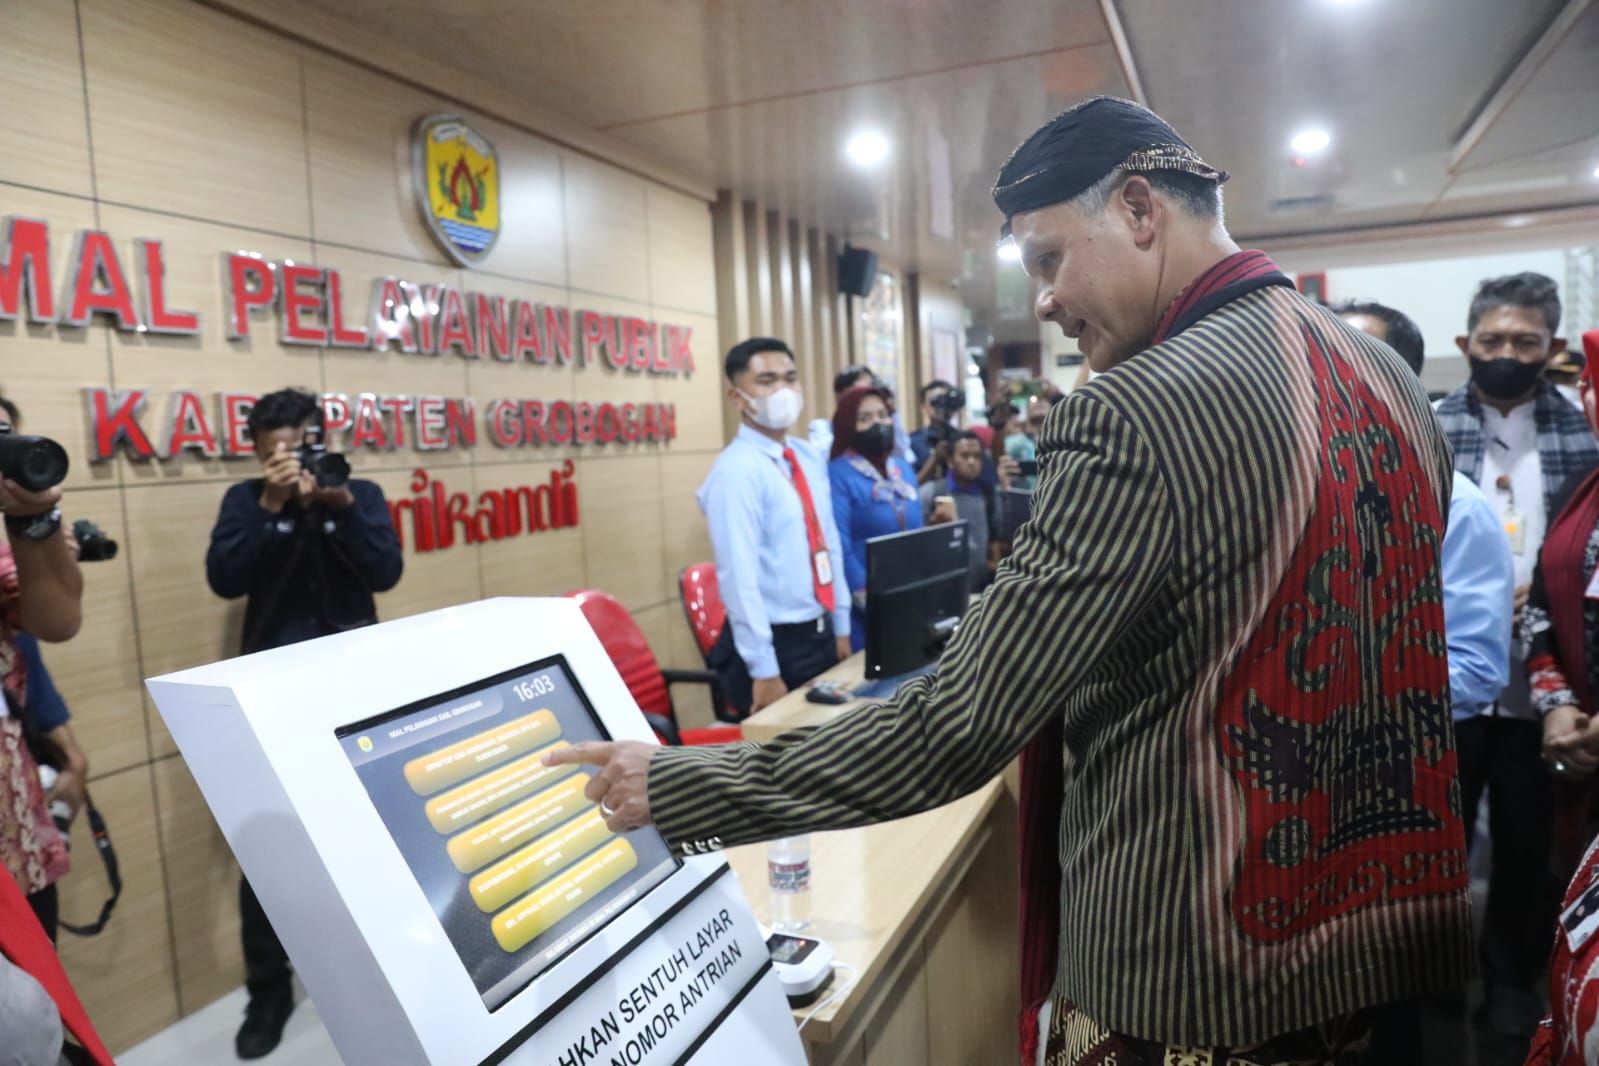 Gubernur Jawa Tengah Ganjar Pranowo resmikan mal pelayanan publik